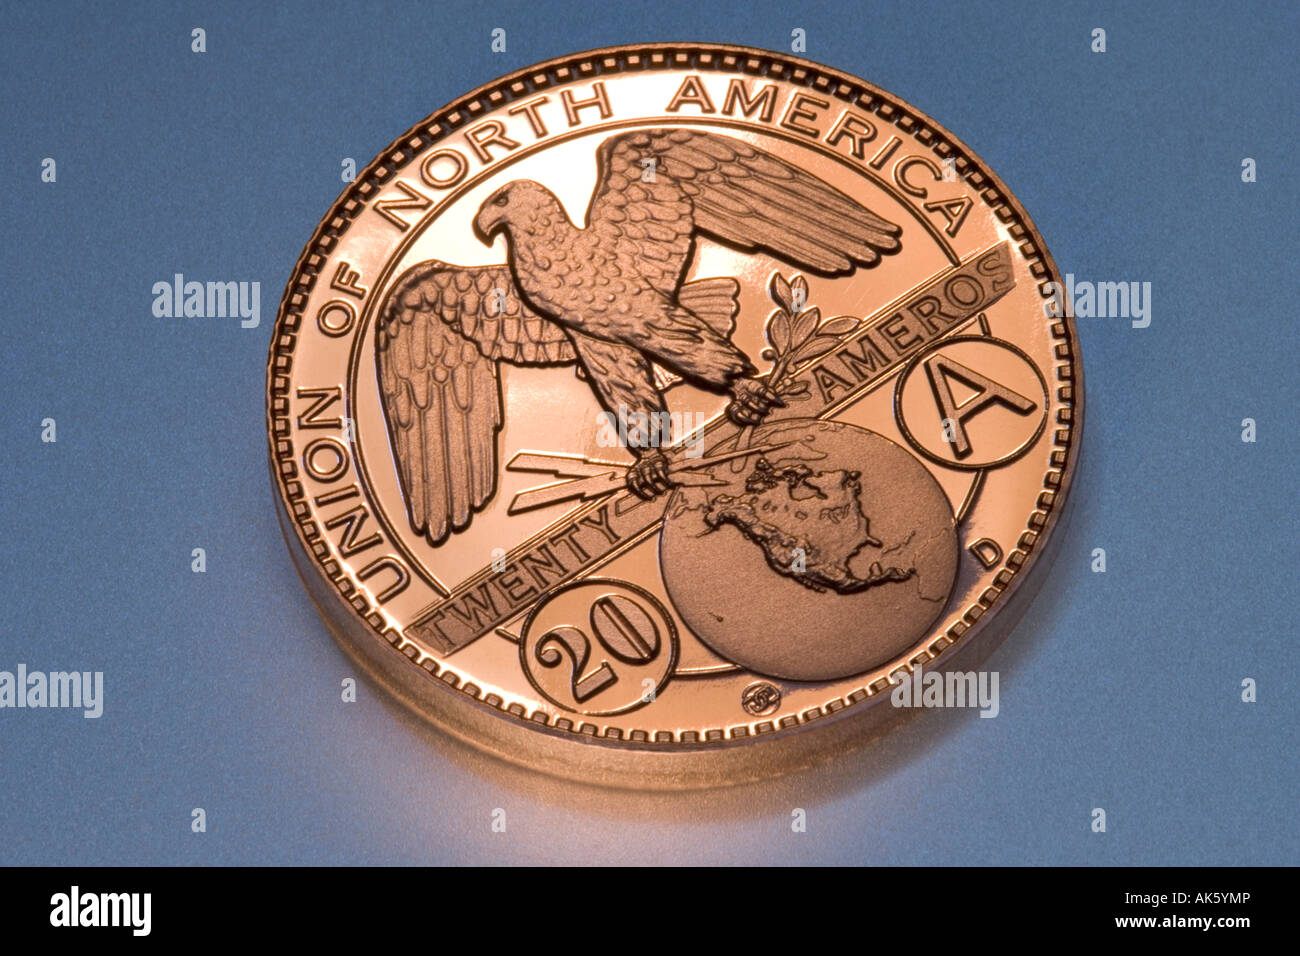 A novelty 20 Amero coin. Stock Photo